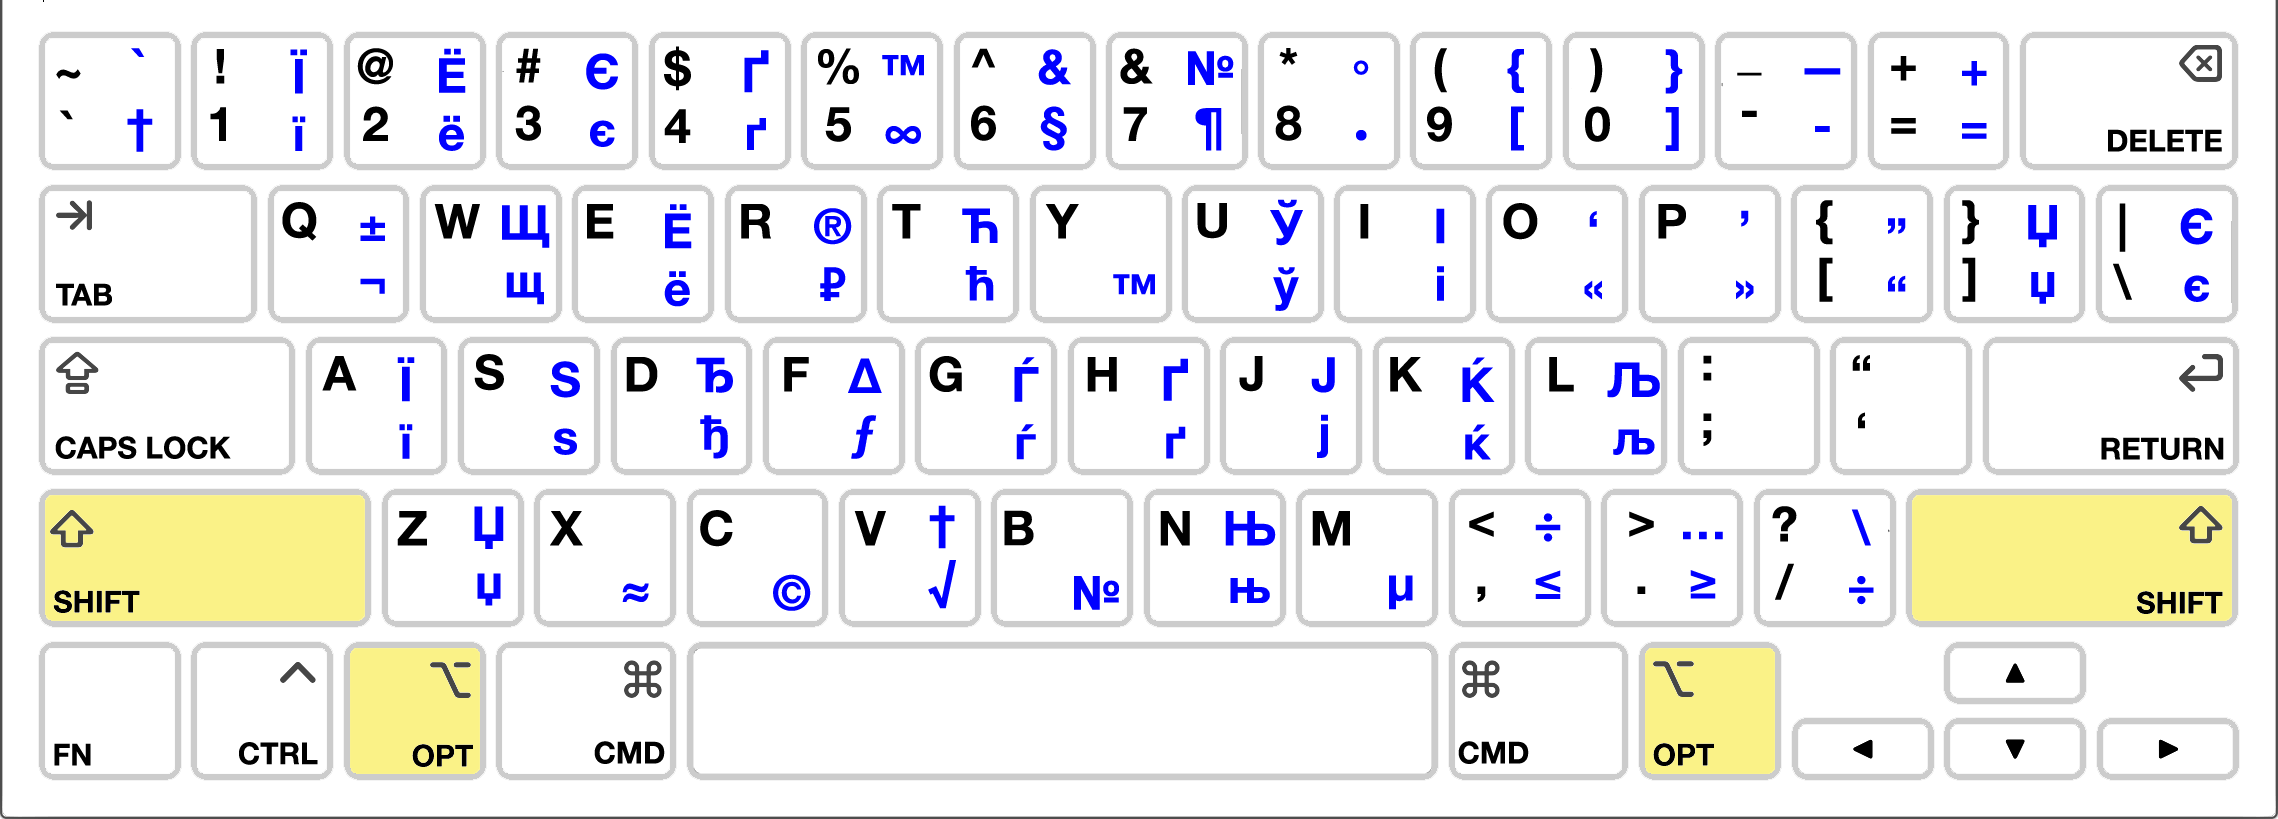 Russian Option Keyboard Layout